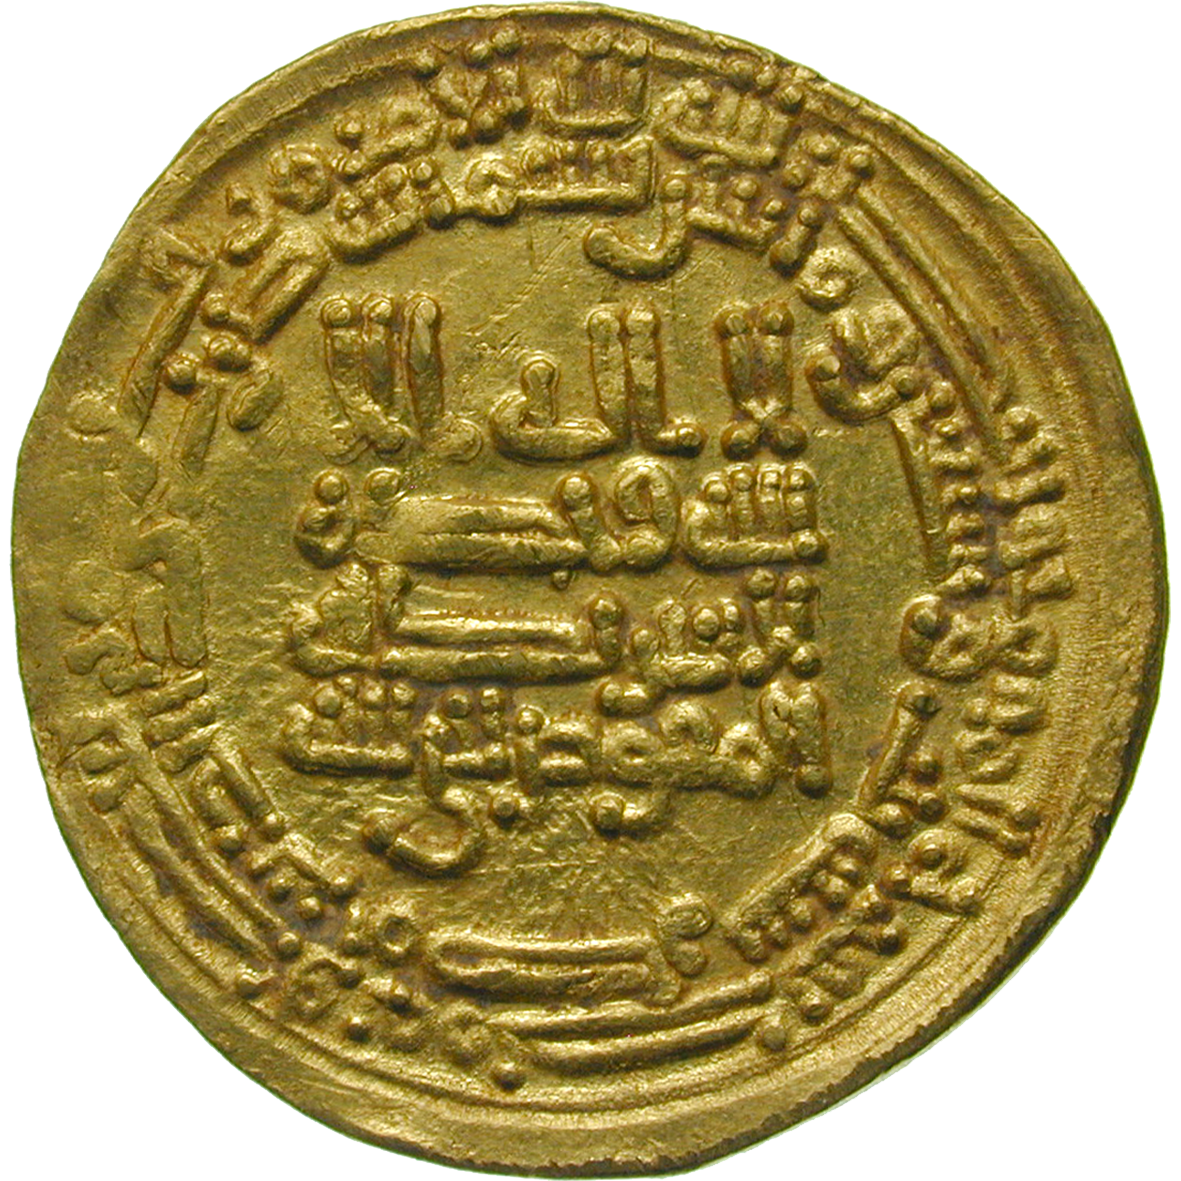 Abbasidenreich, Dynastie der Tuluniden, Chumarawaih ibn Ahmad, Dinar 273 AH (obverse)